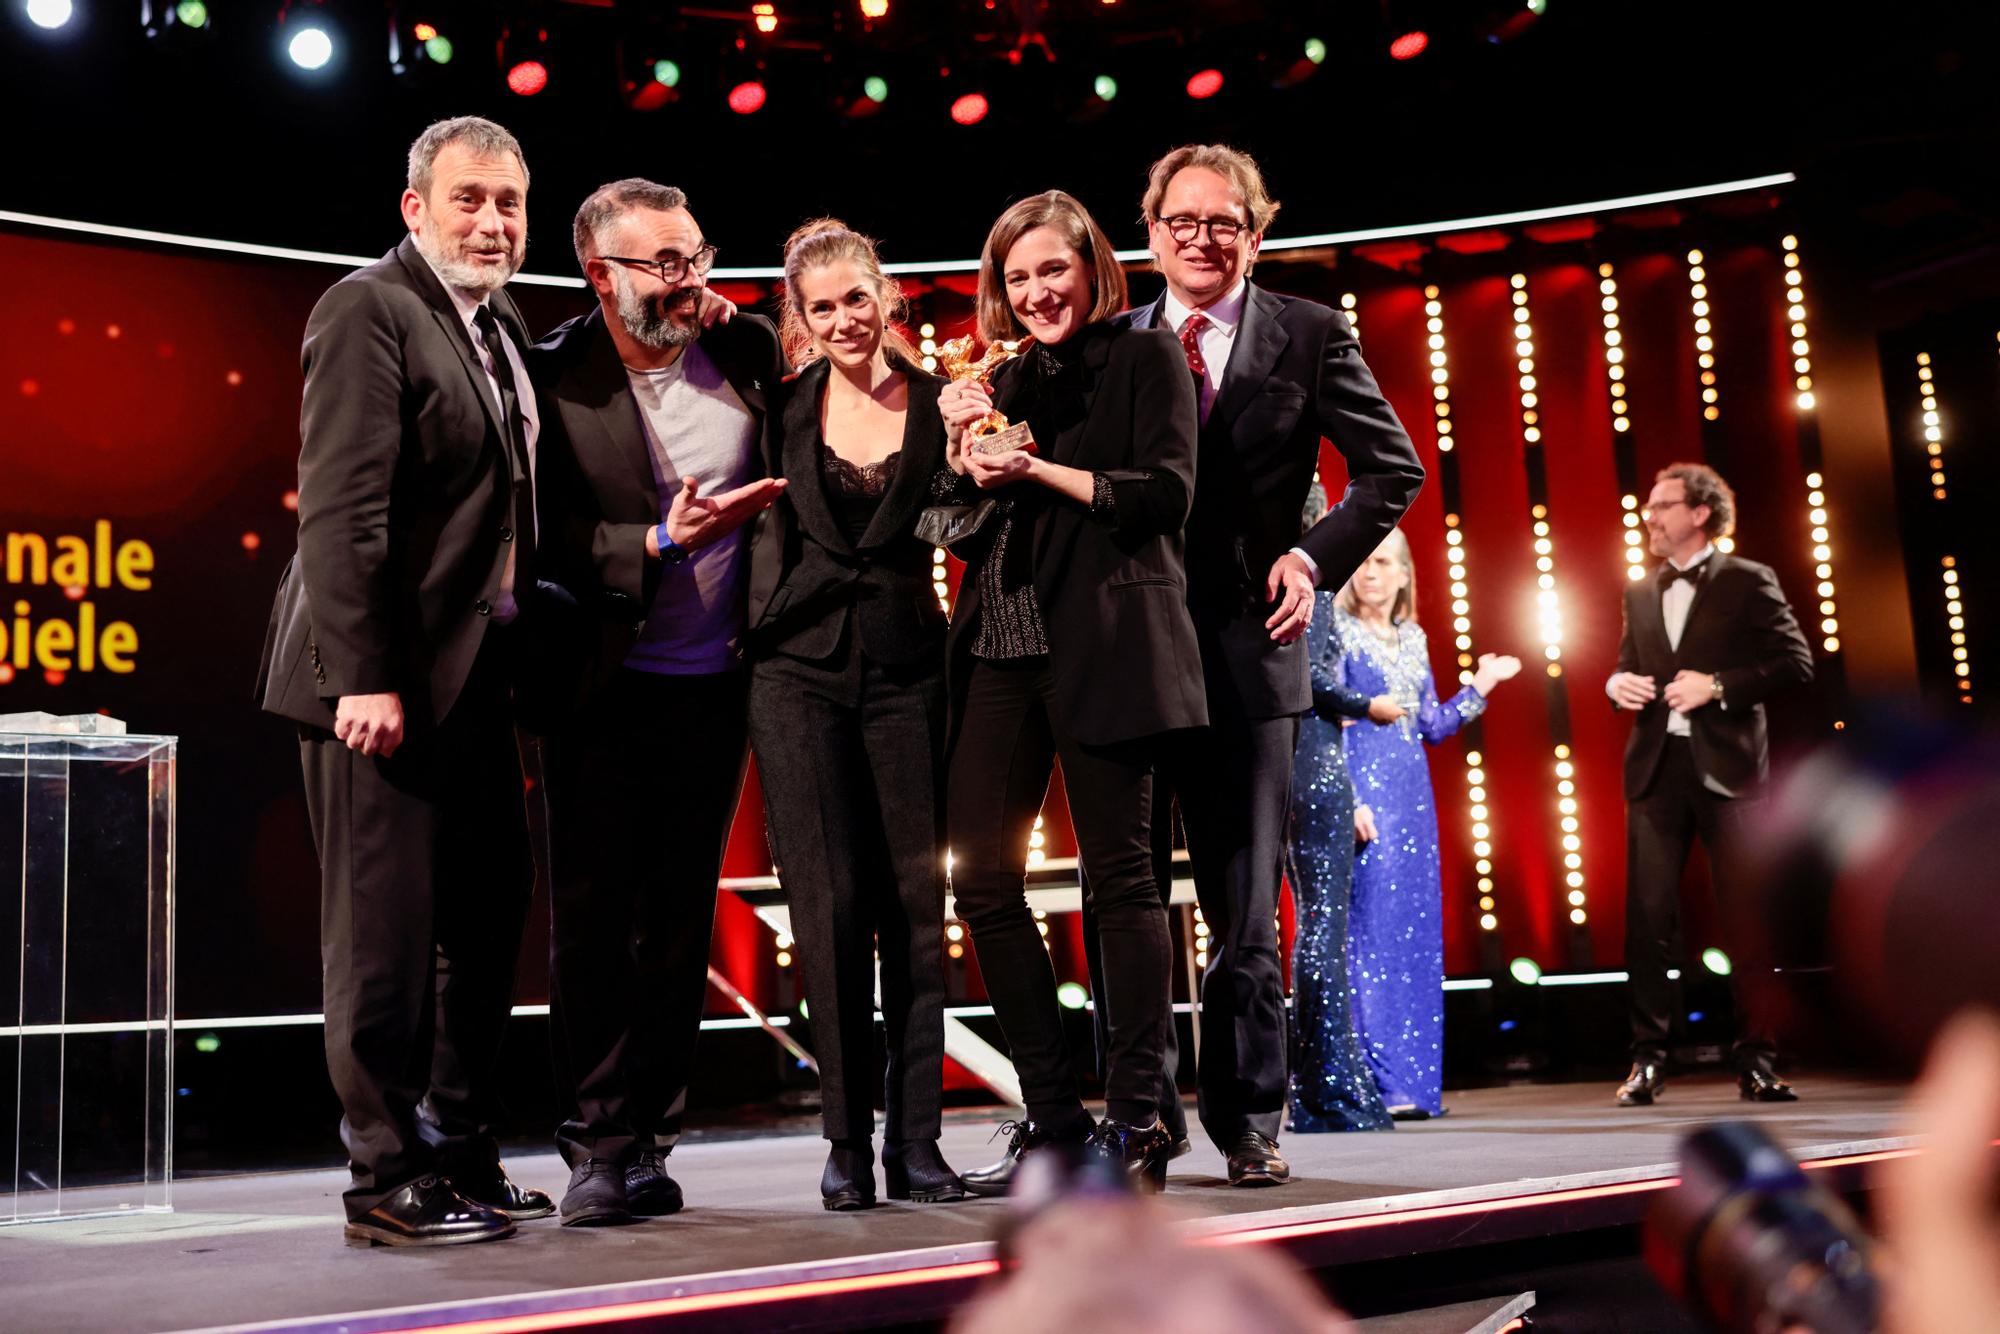 Carla Simón rep el primer Os d'Or català a la Berlinale